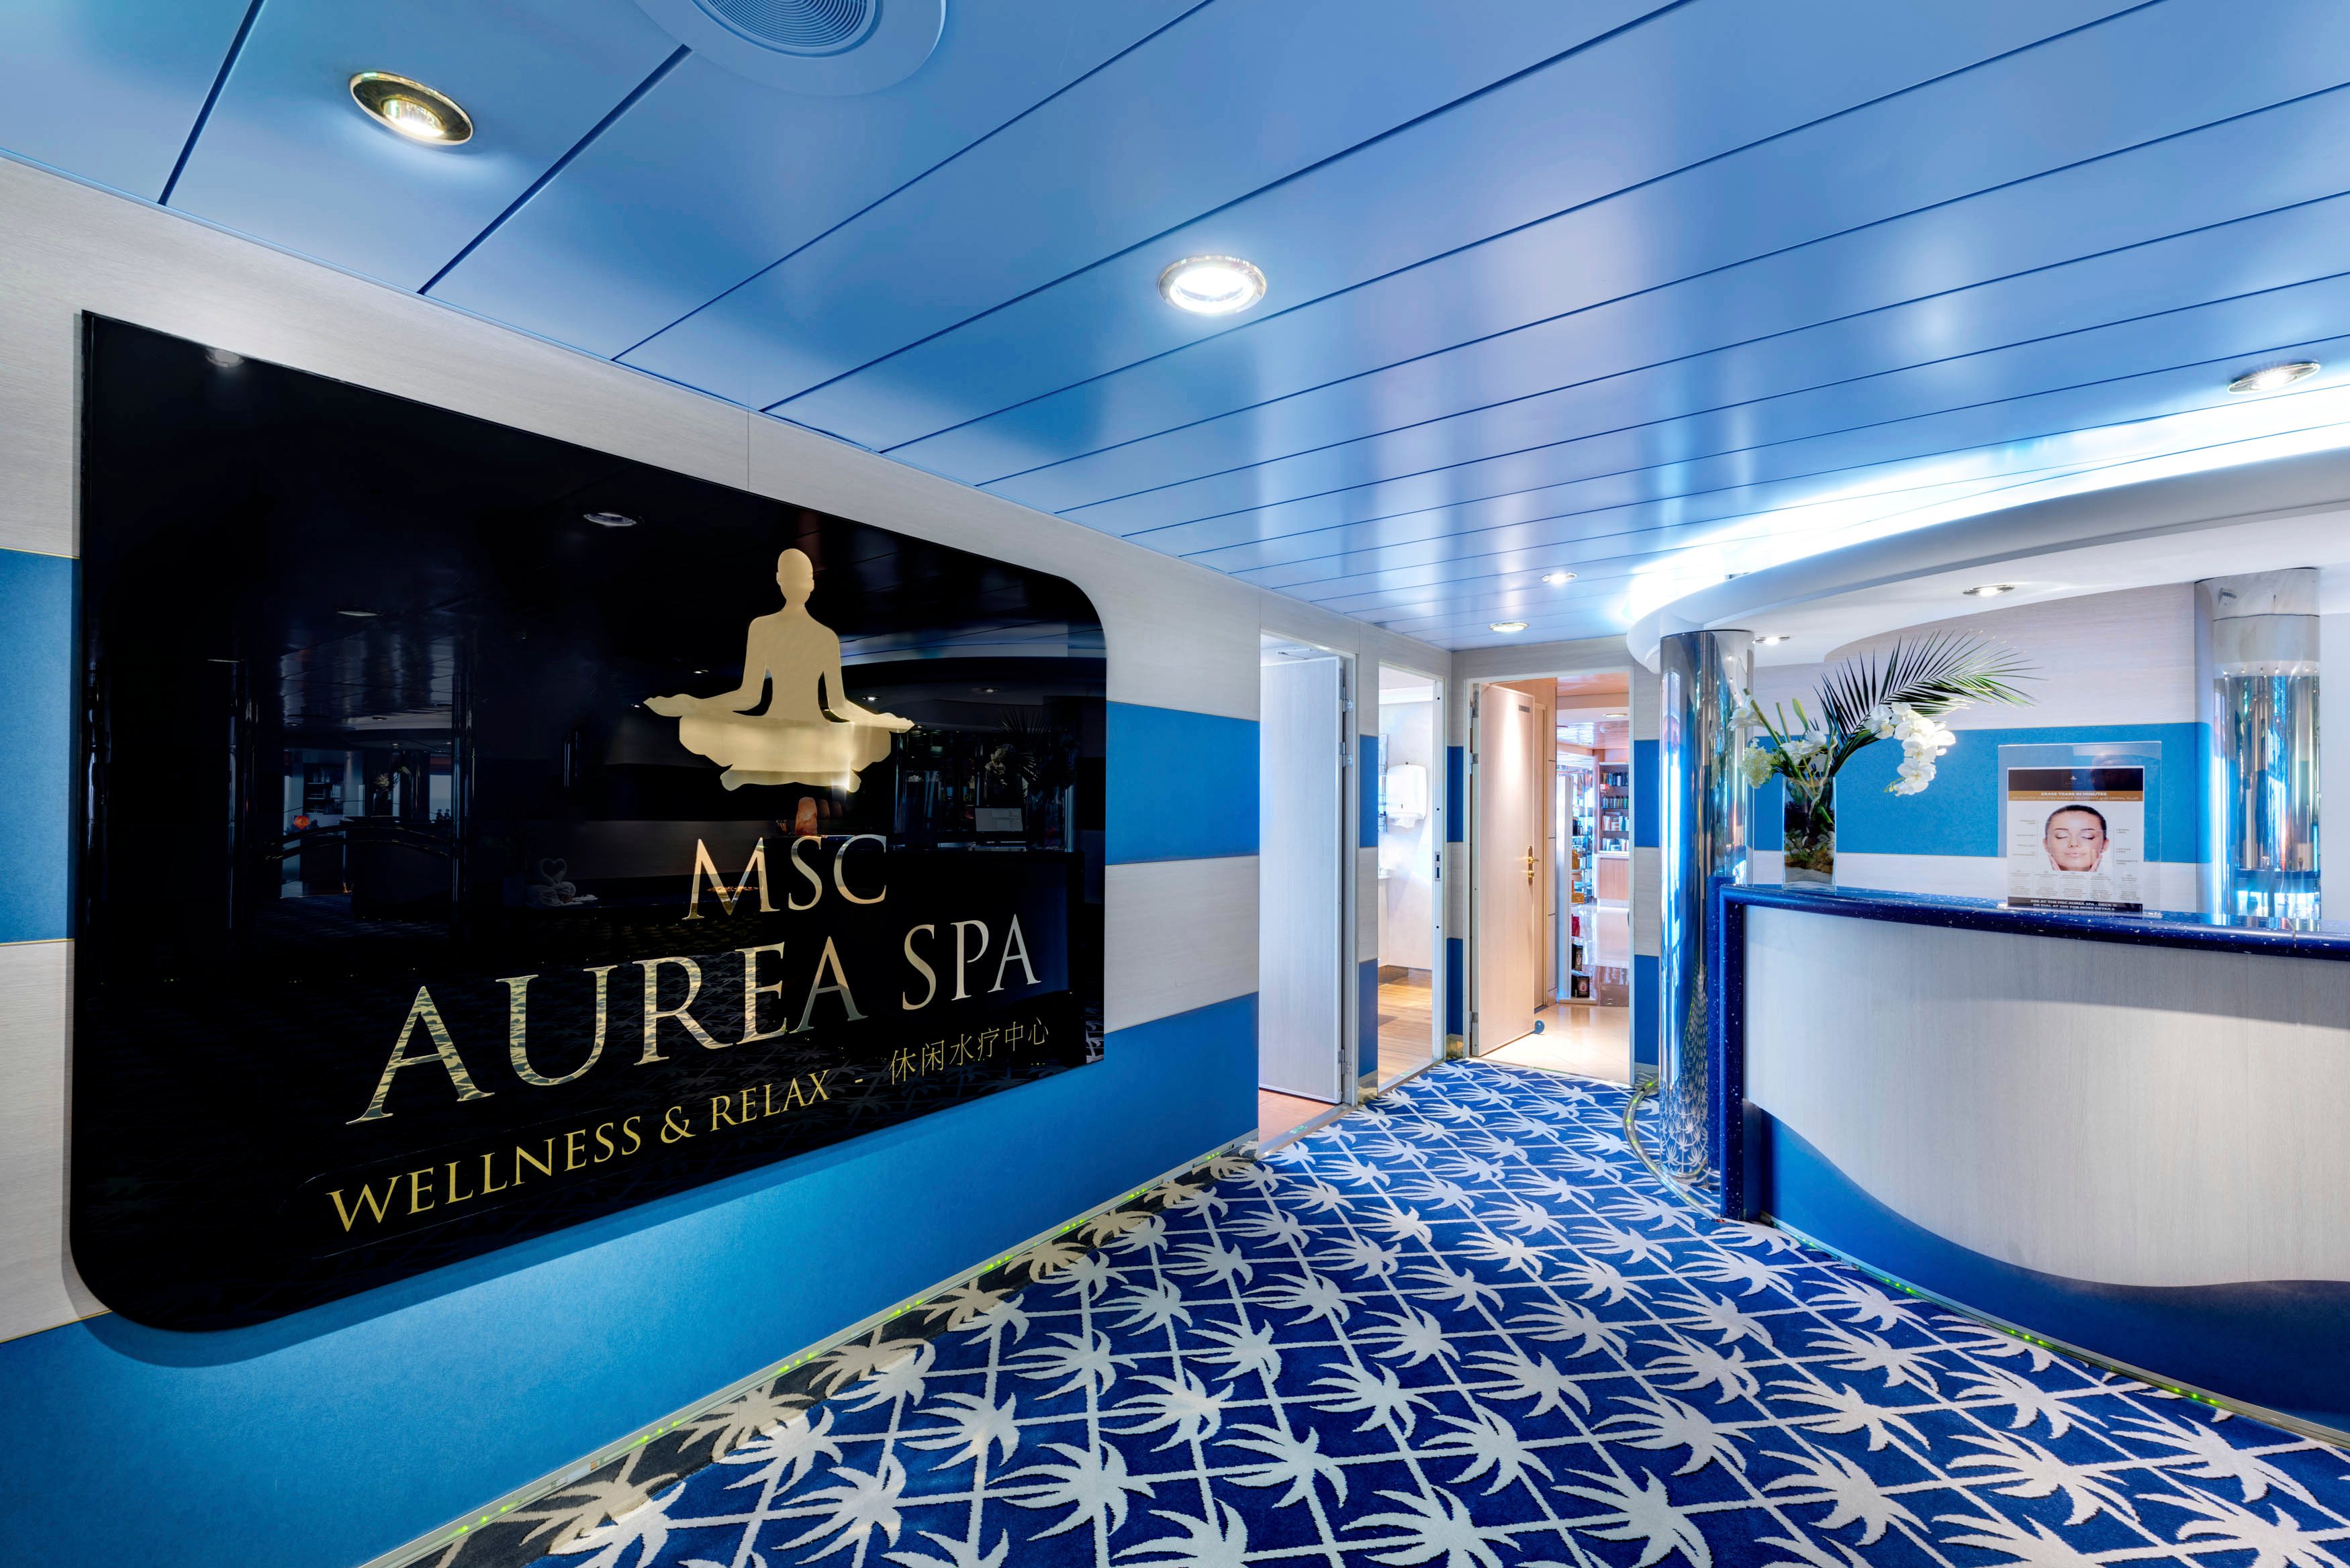 Aurea Spa Reception onboard MSC Lirica | 600 x 400